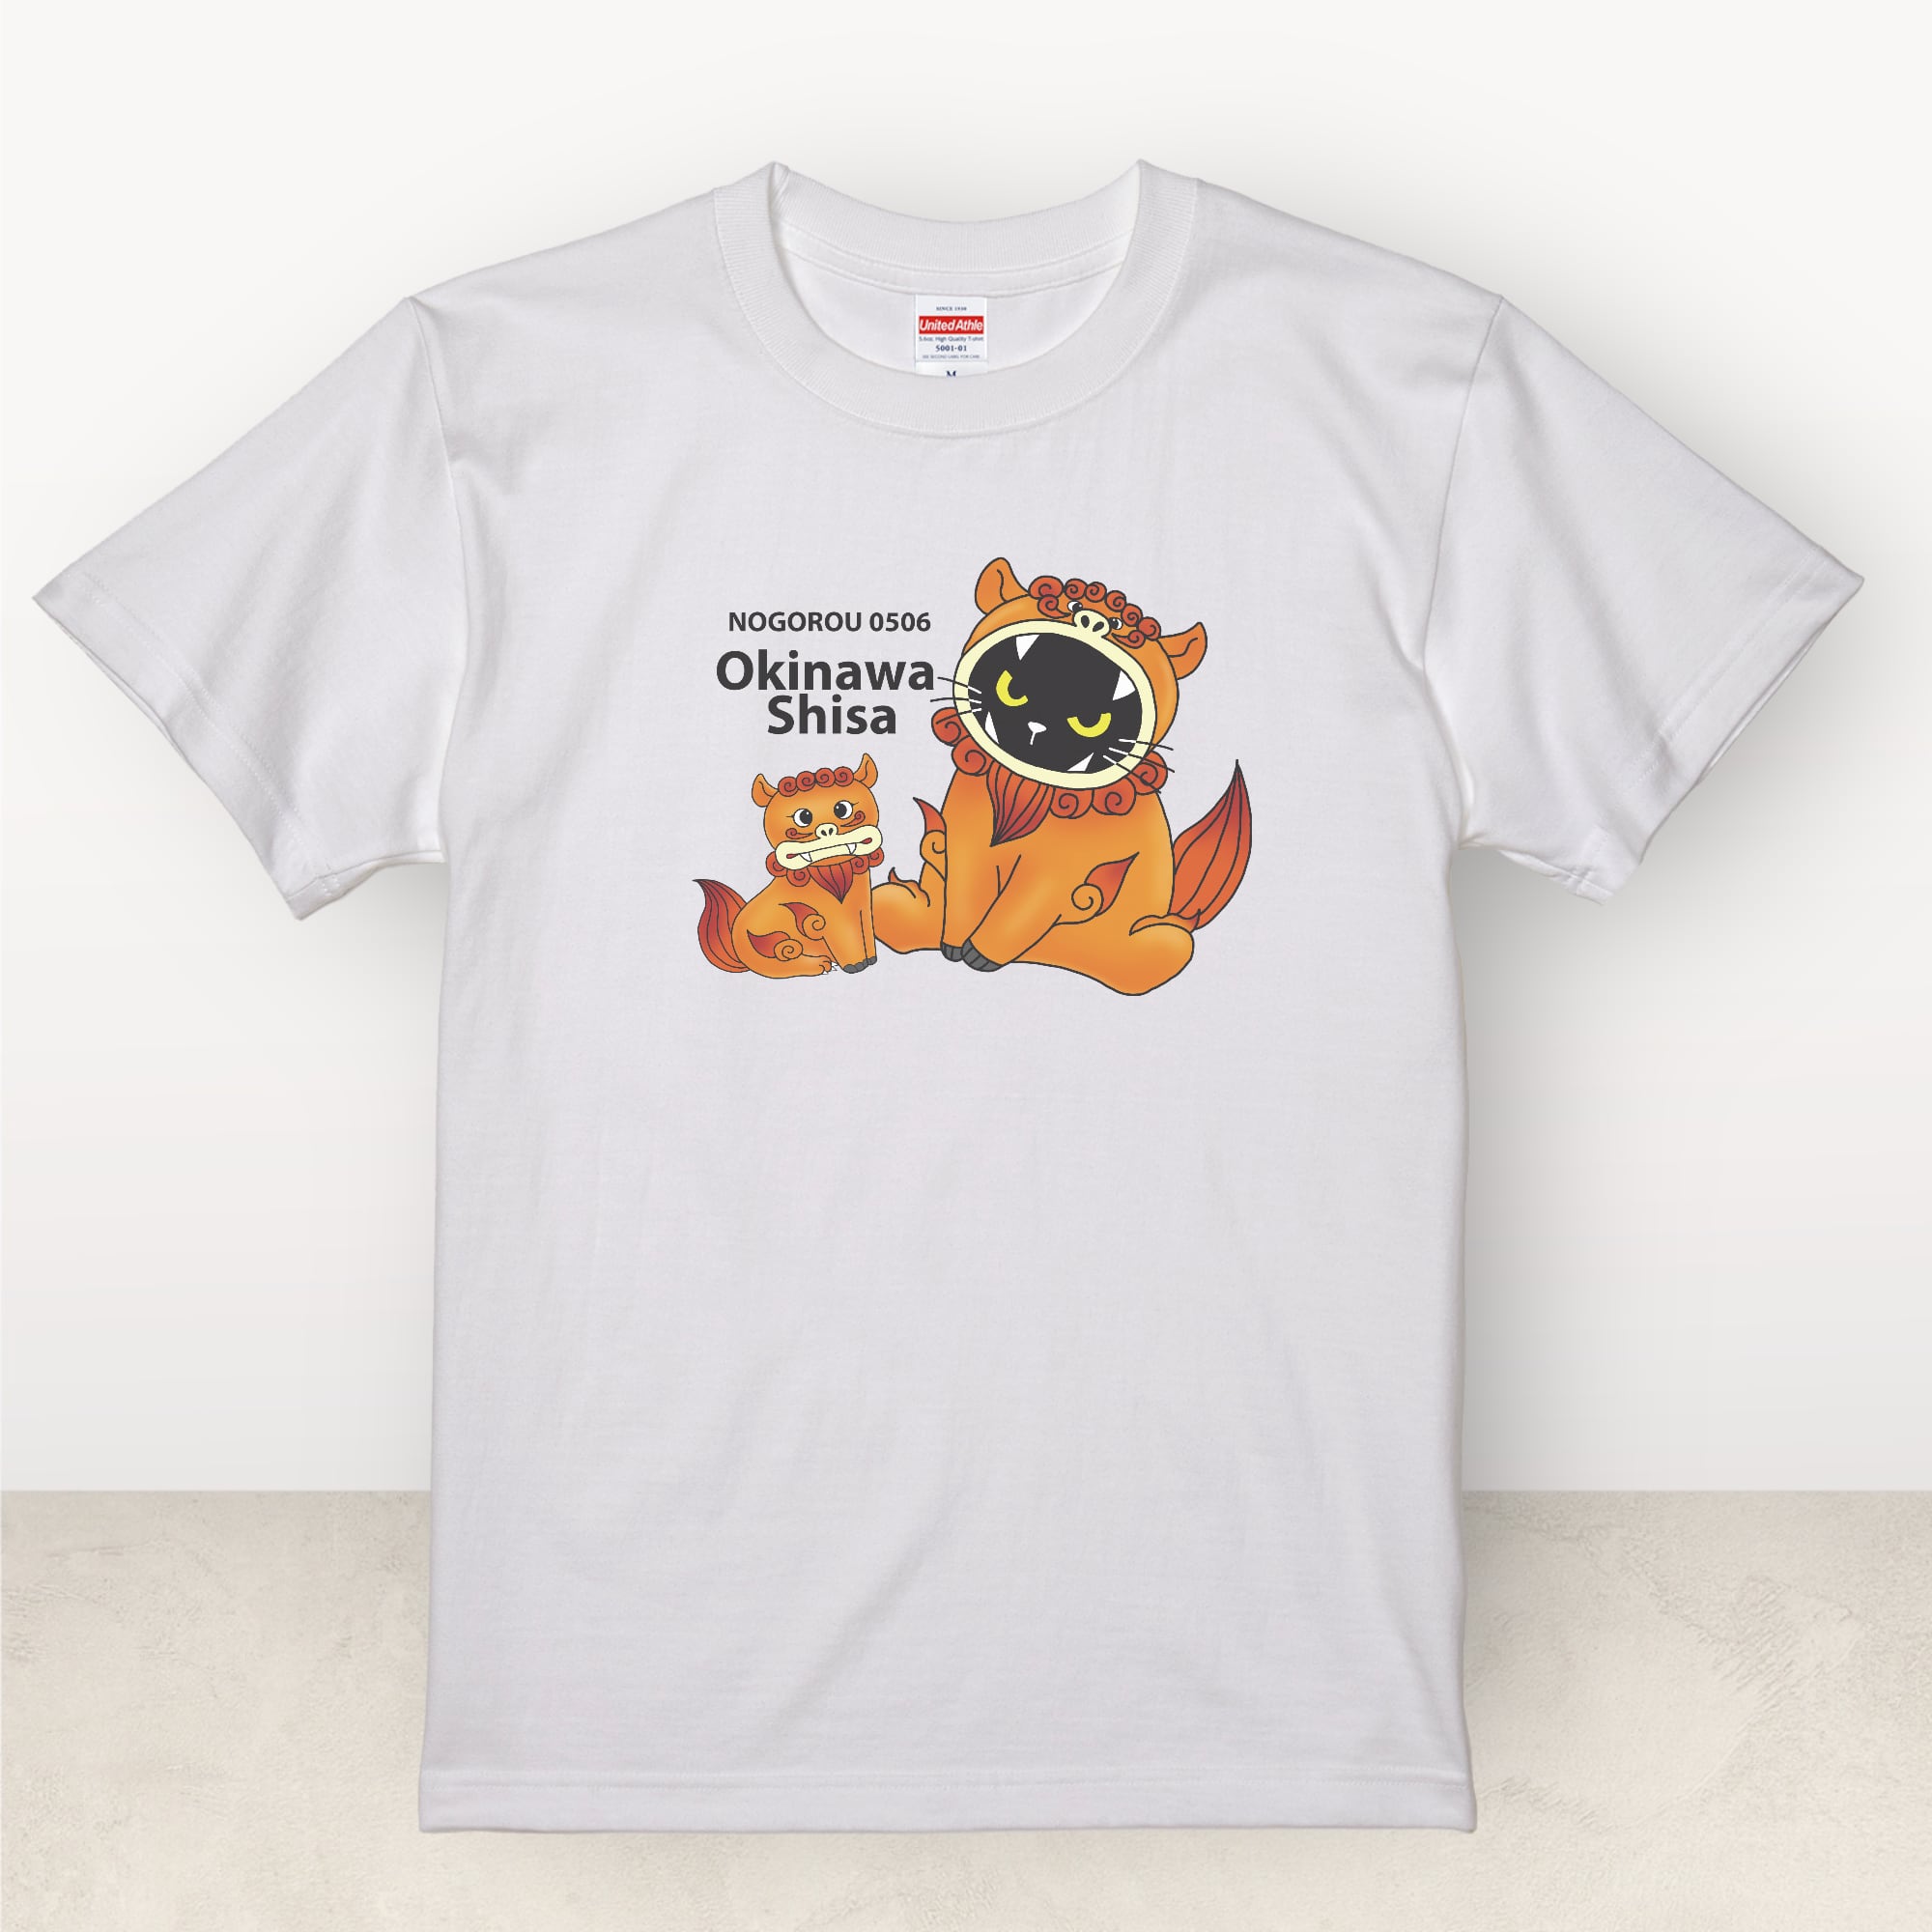 ご当地シリーズ パンフレット未掲載商品 沖縄シーサーコラボ Tシャツ